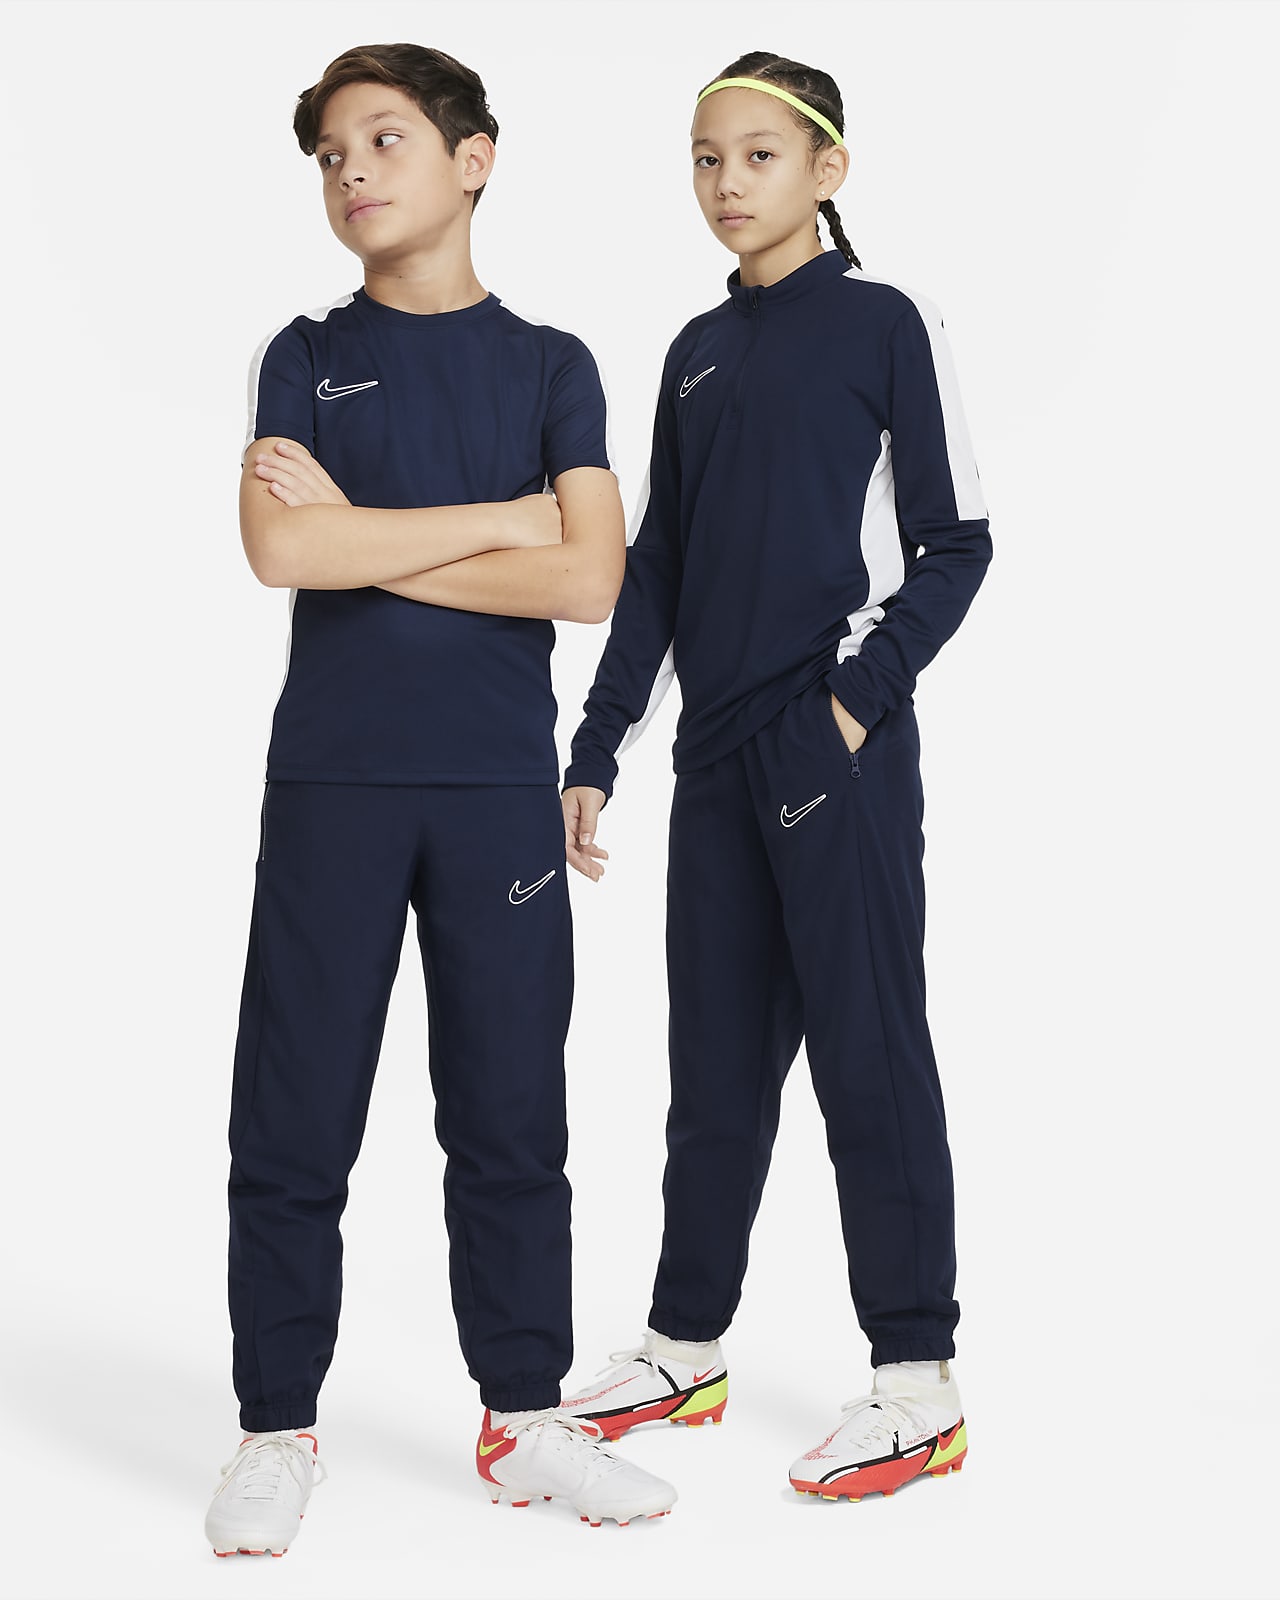 Nike Dri-FIT til større børn.